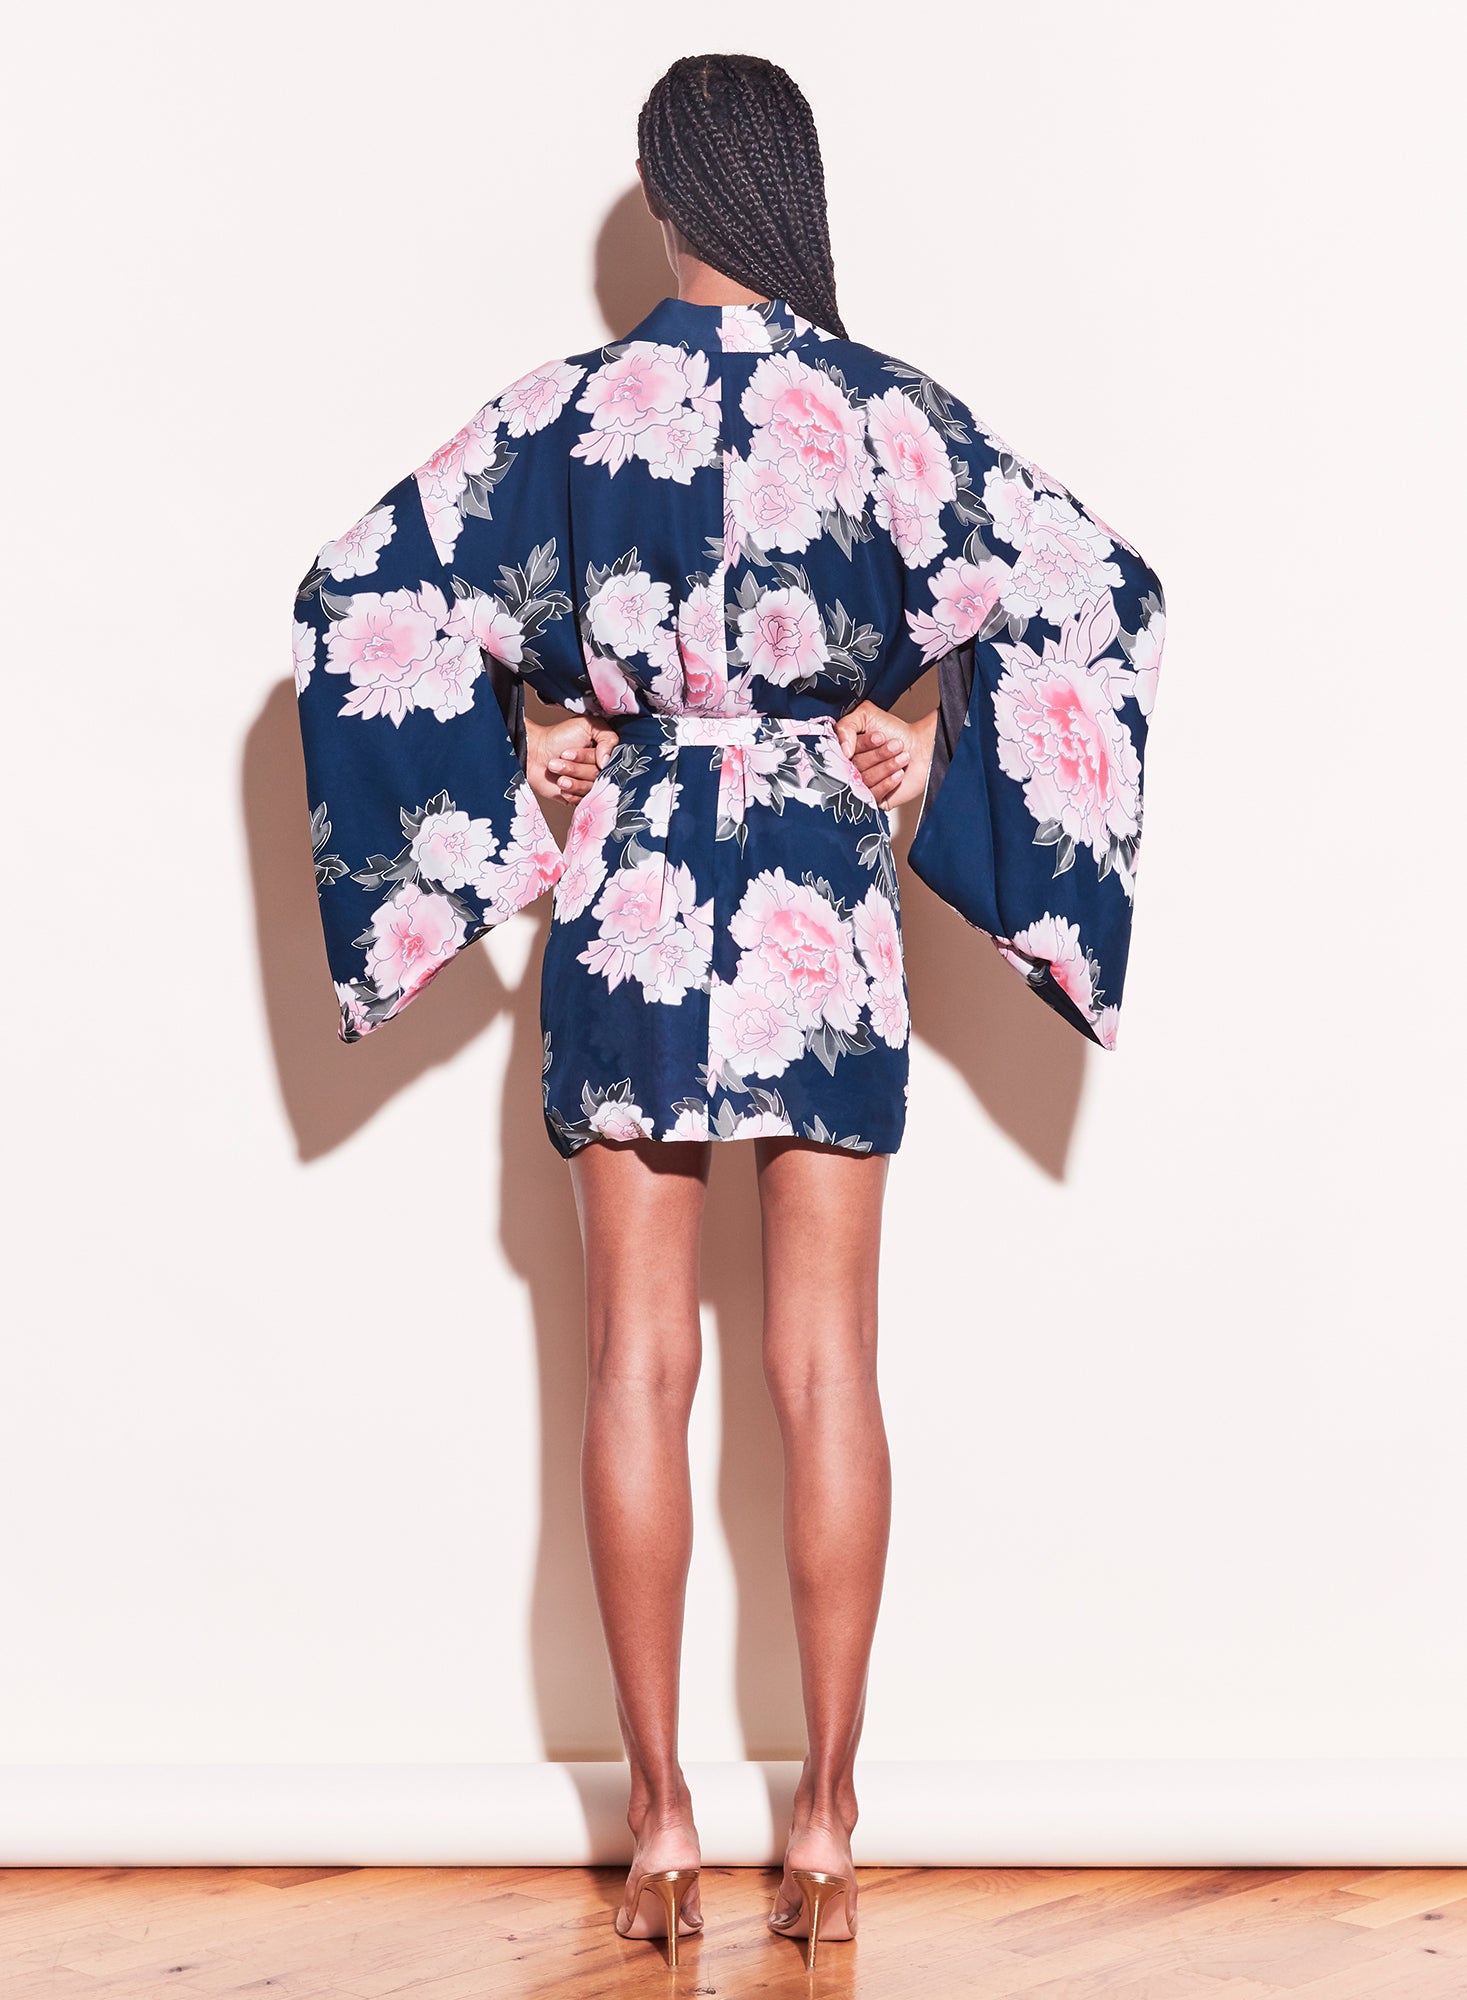 Haori Kimono